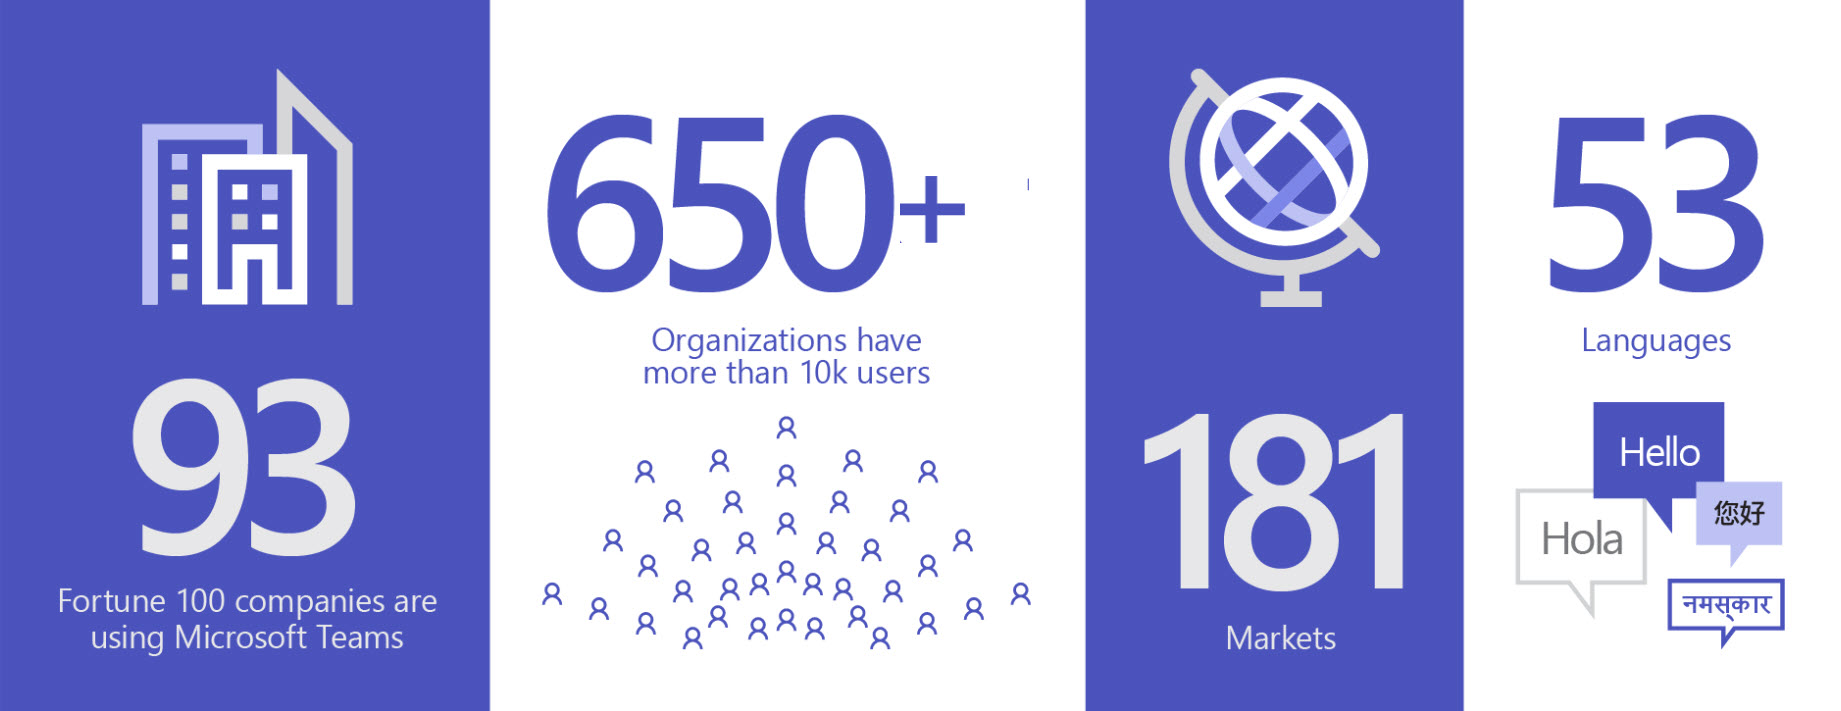 Изображение, на котором показан охват использования Teams: 93 организации из списка Fortune 100, больше 650 компаний с не менее чем 10 000 пользователей, 181 рынок и 53 языка по всему миру.